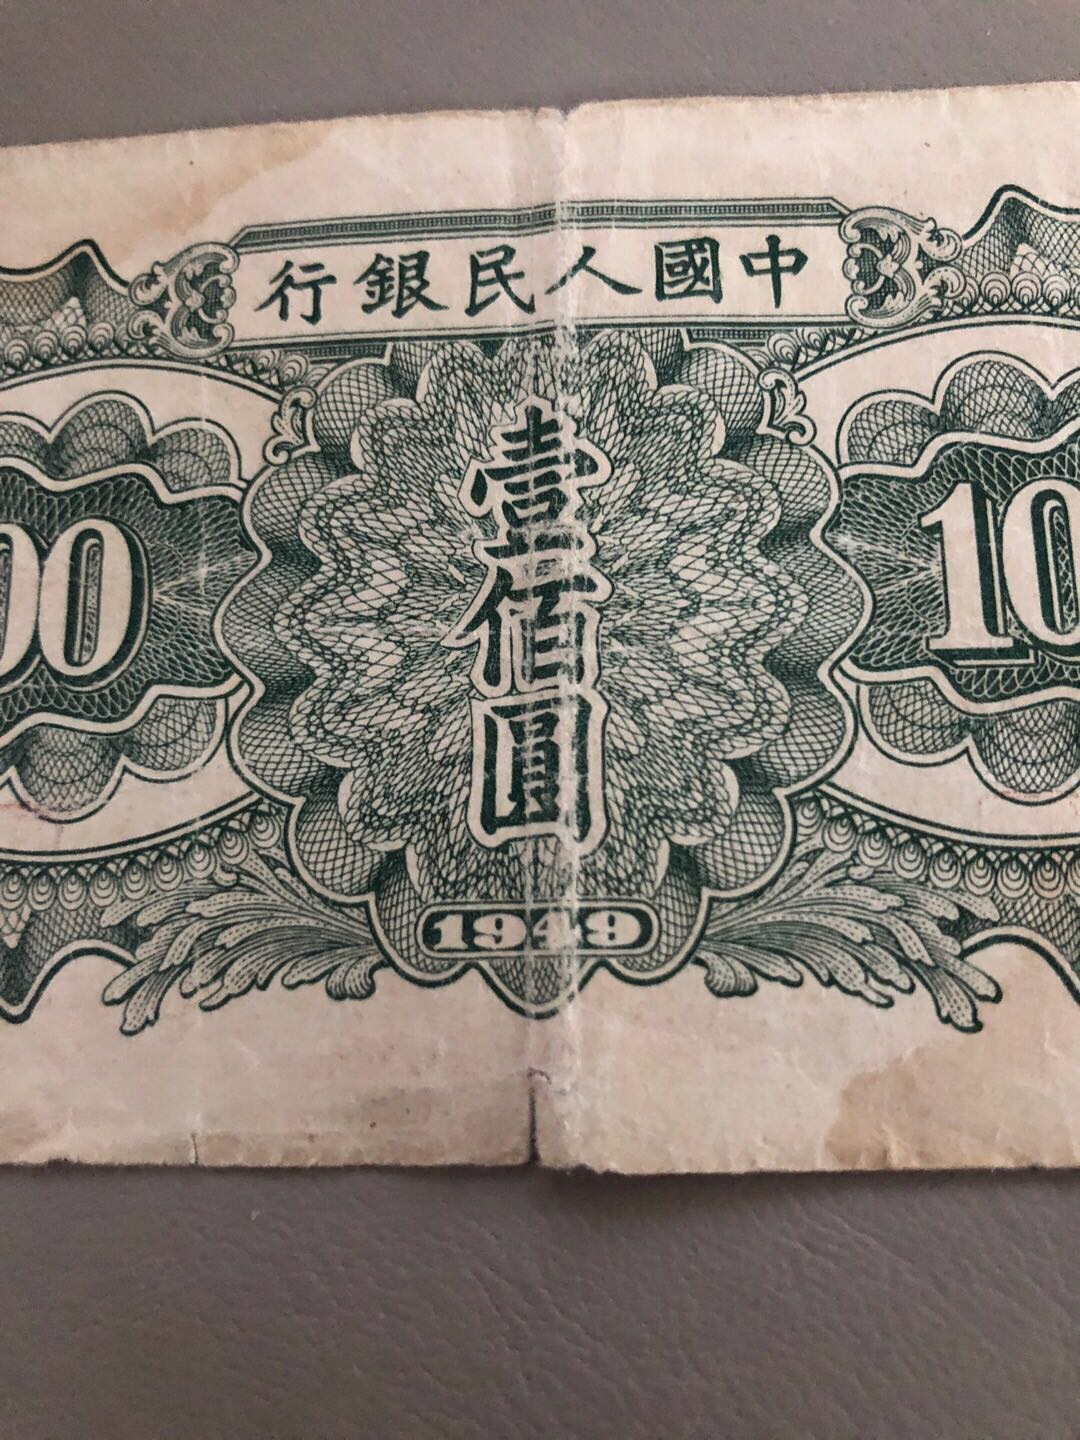 1948年版100元人民币图片